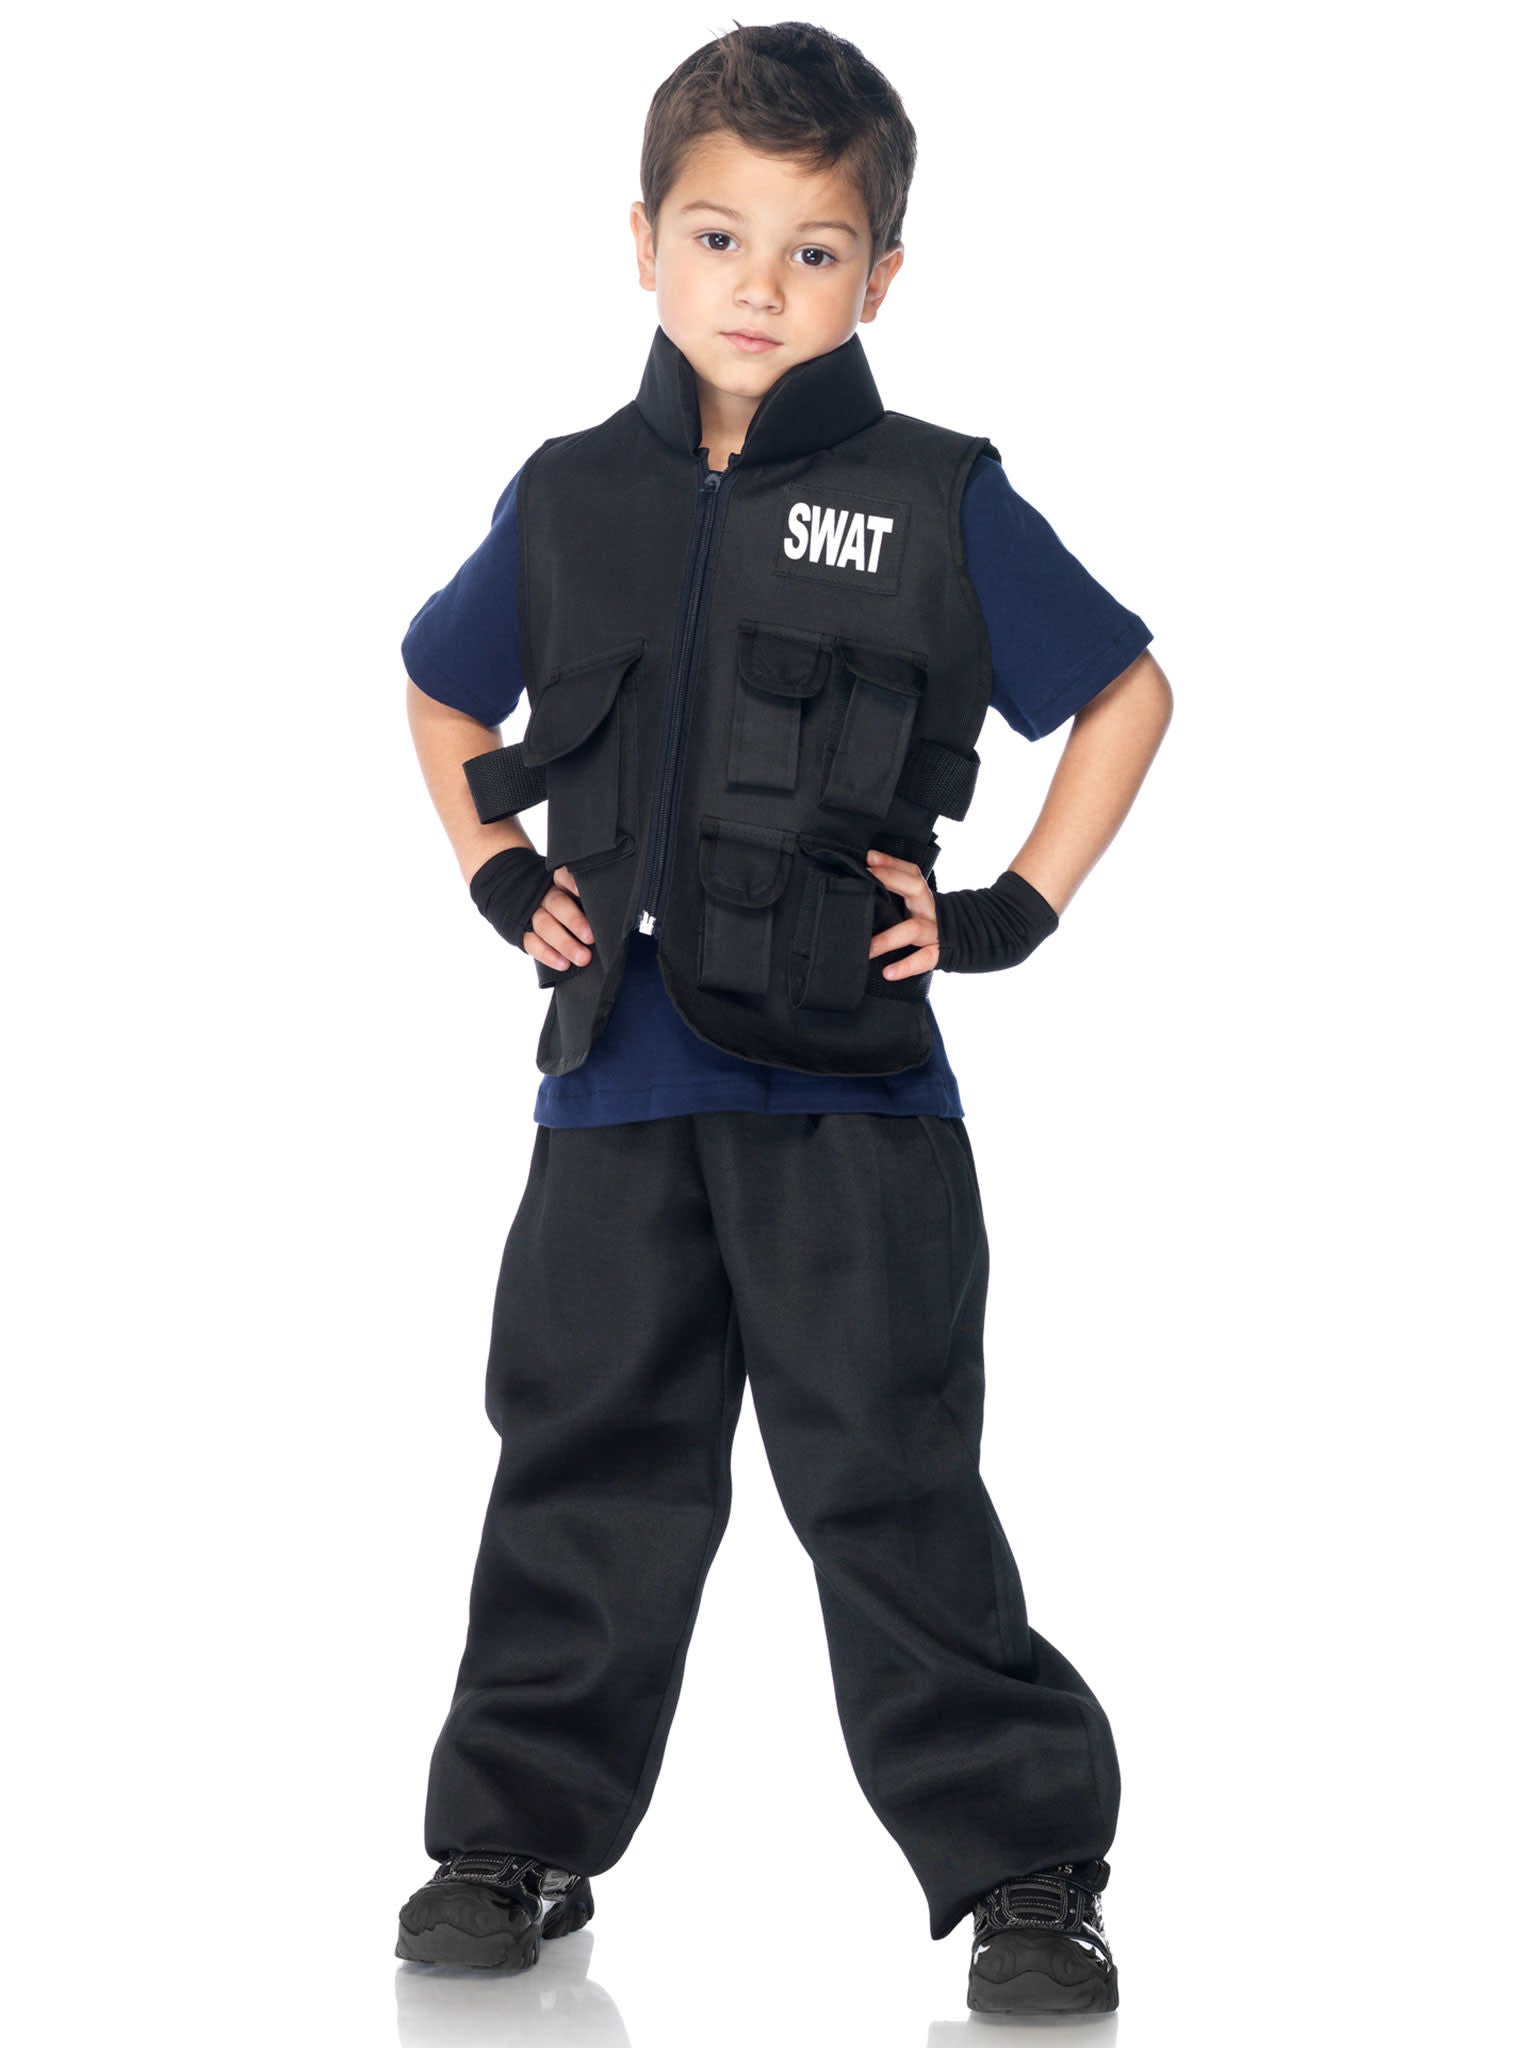 Costume Enfant - Officier Swat - Party Shop